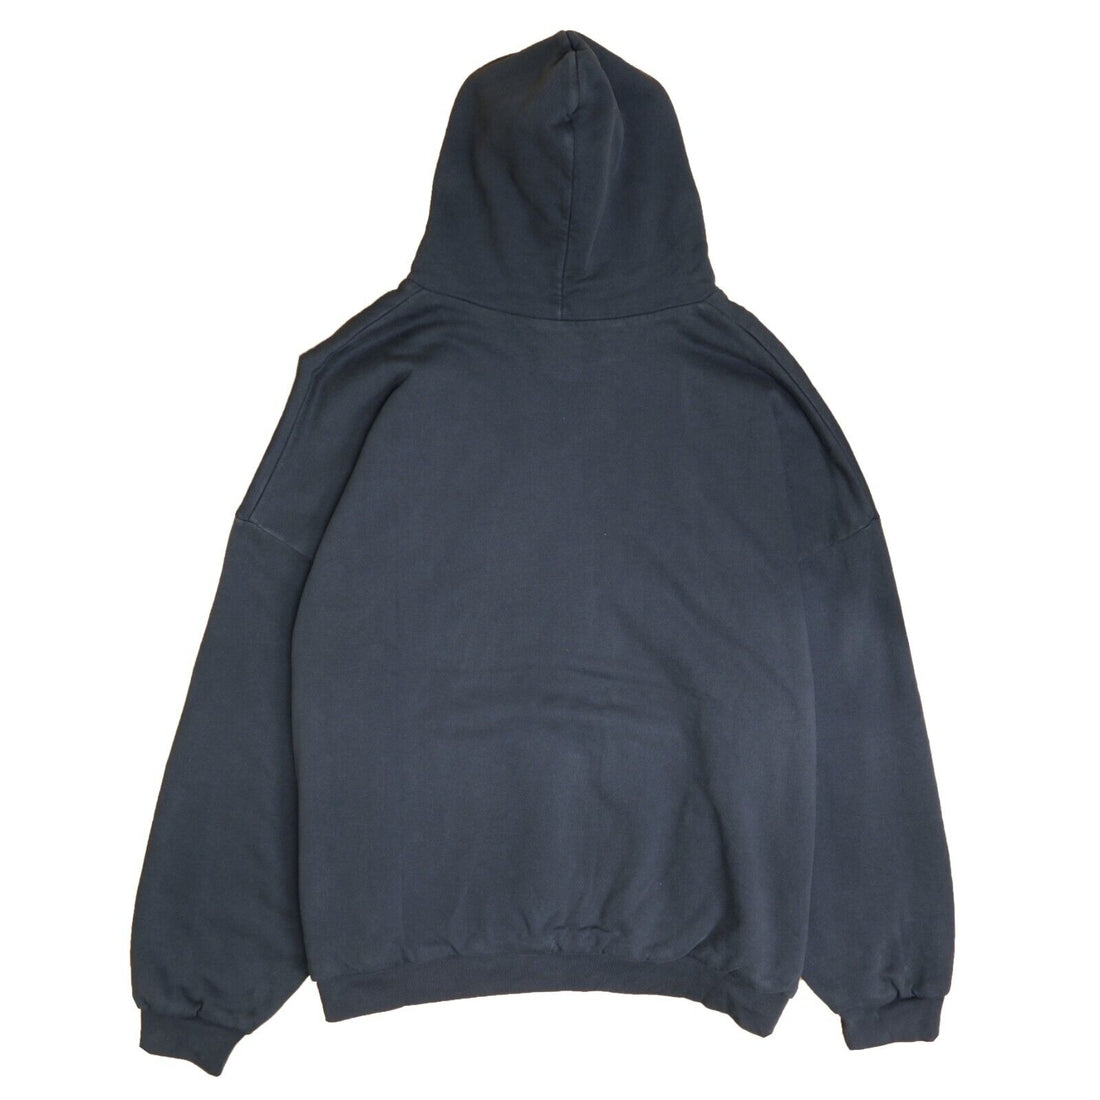 Yeezy Gap Unreleased Pullover Sweatshirt Hoodie Size XL Black